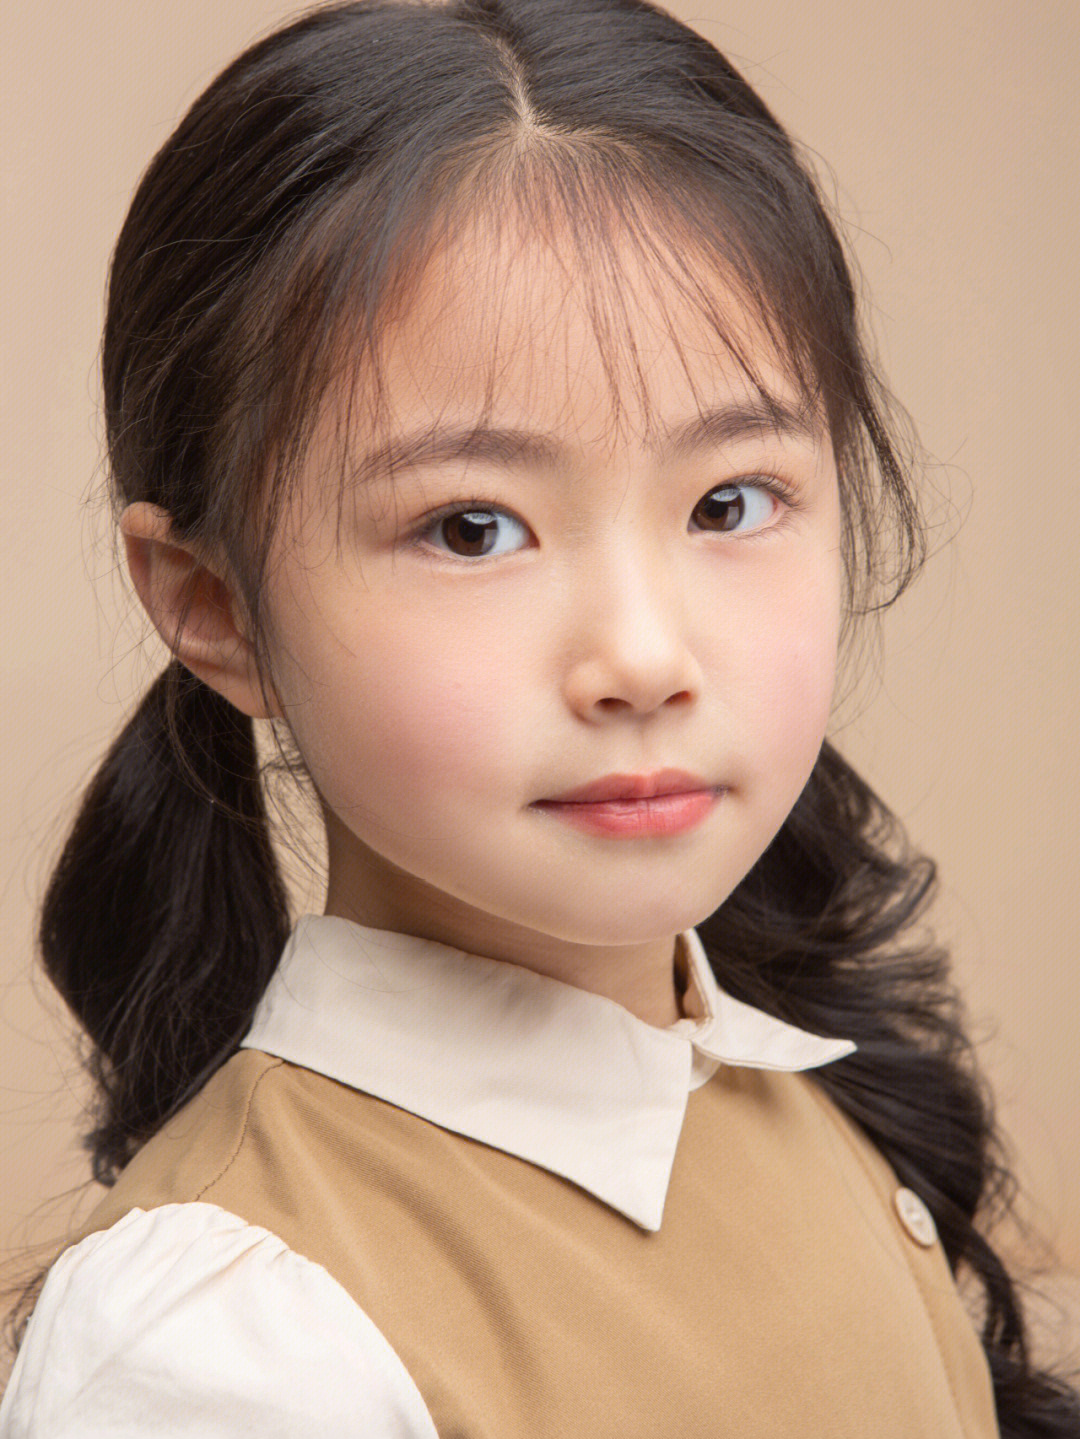 中国最美小女孩女孩子图片